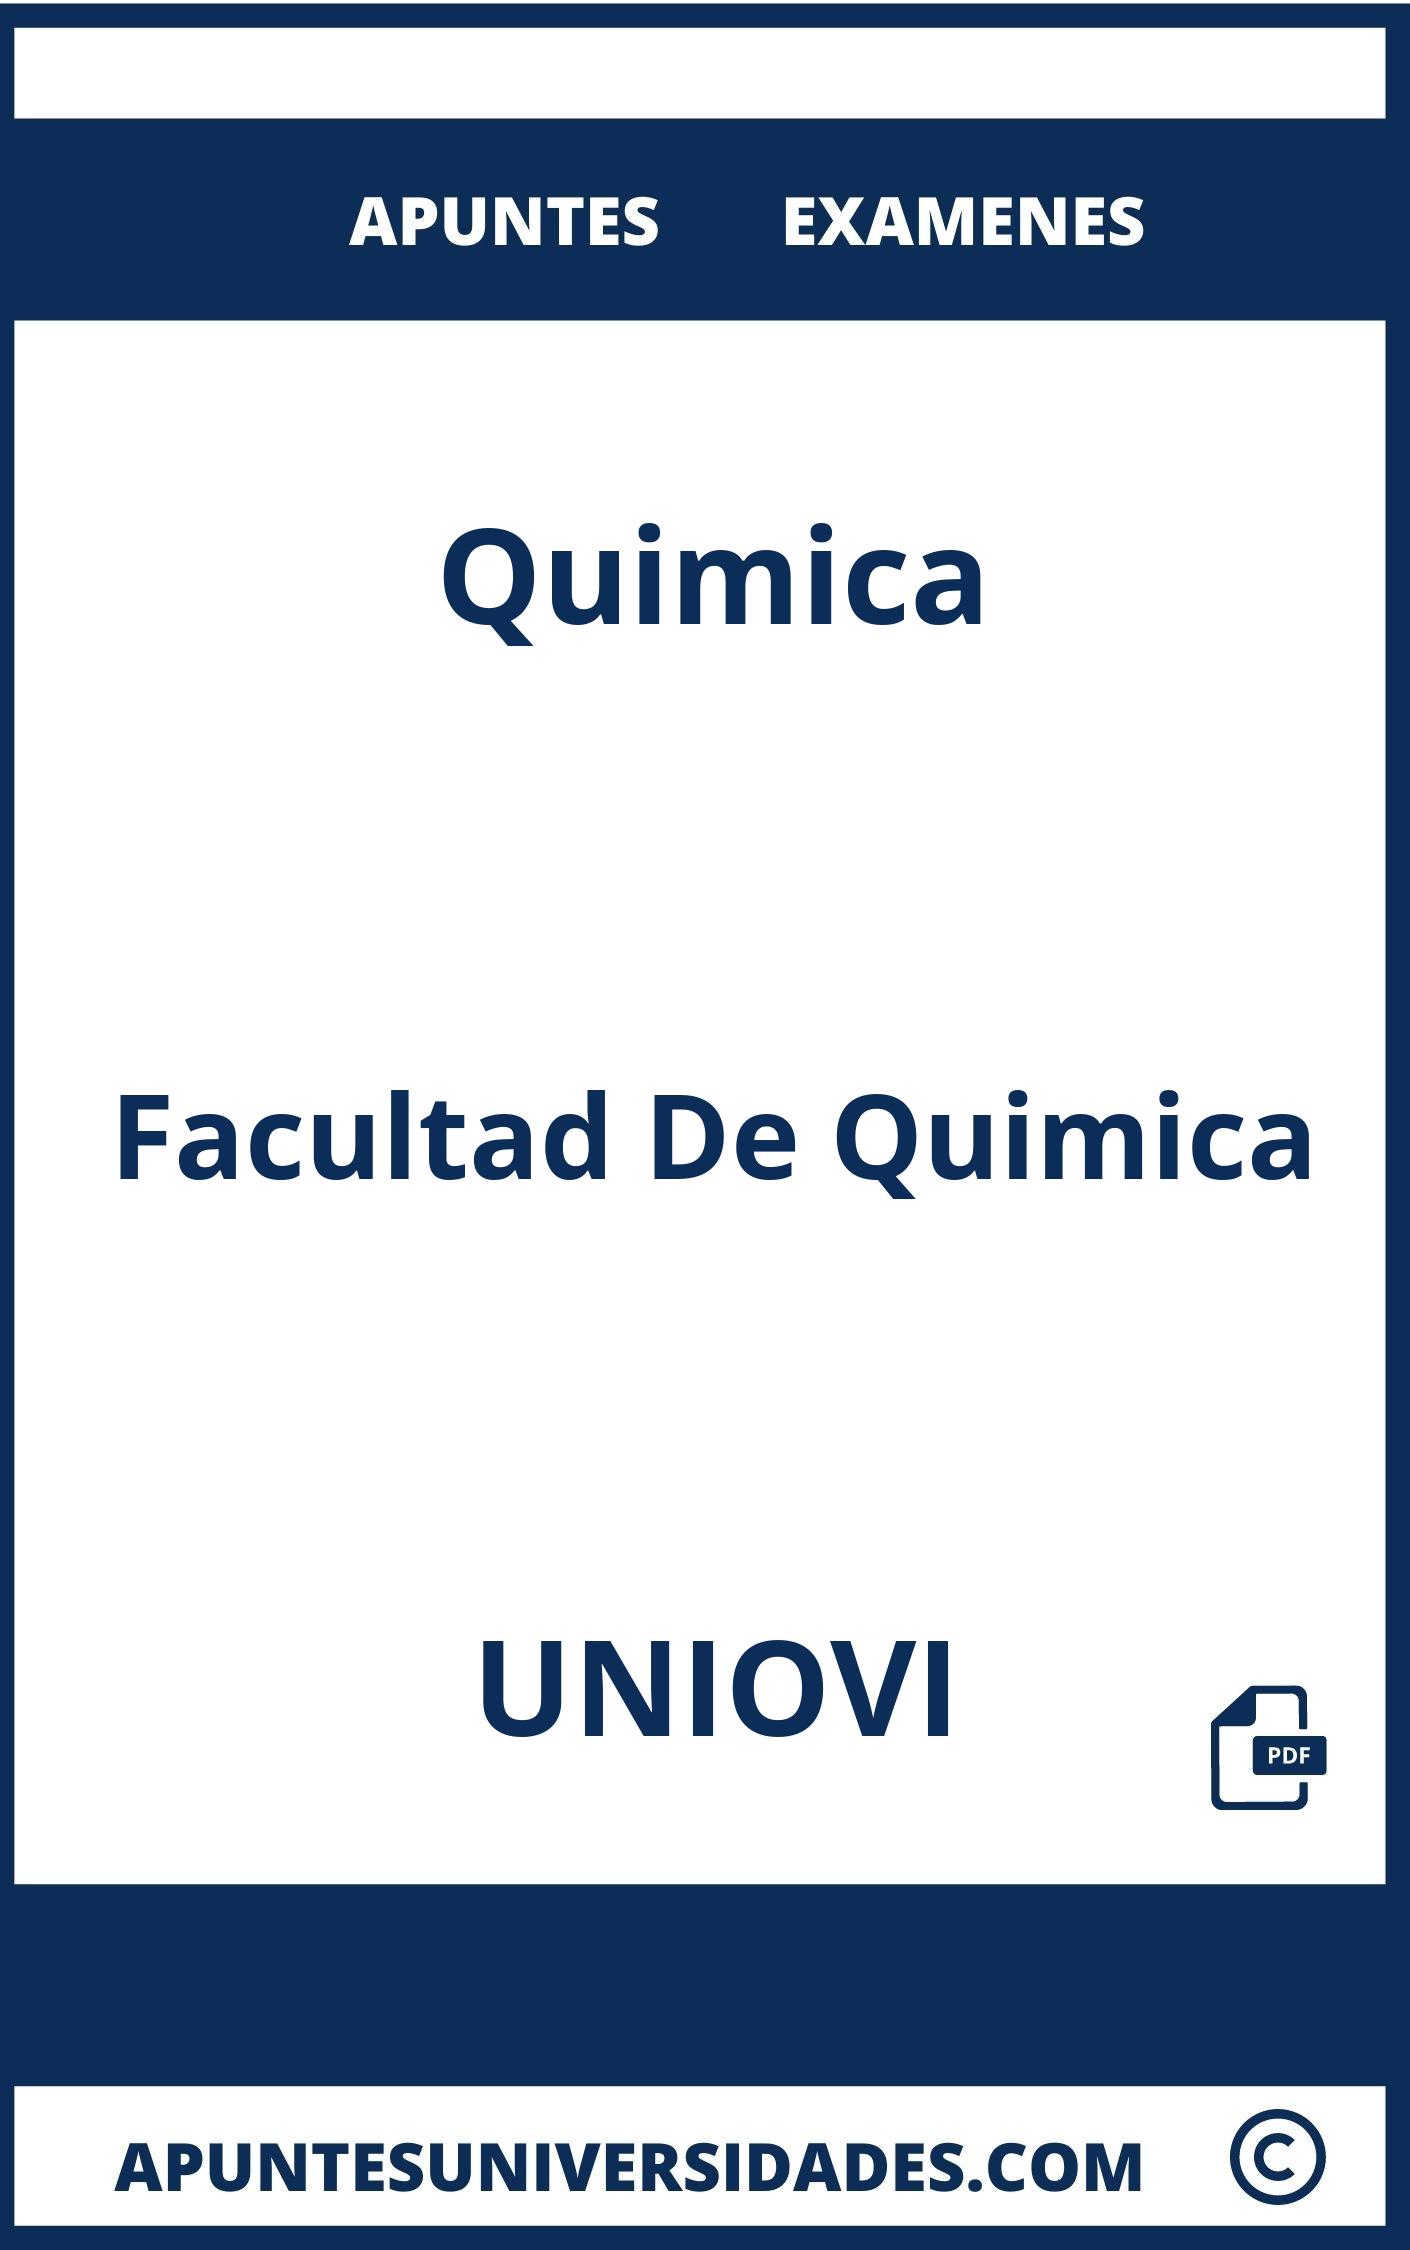 Examenes Apuntes Quimica UNIOVI